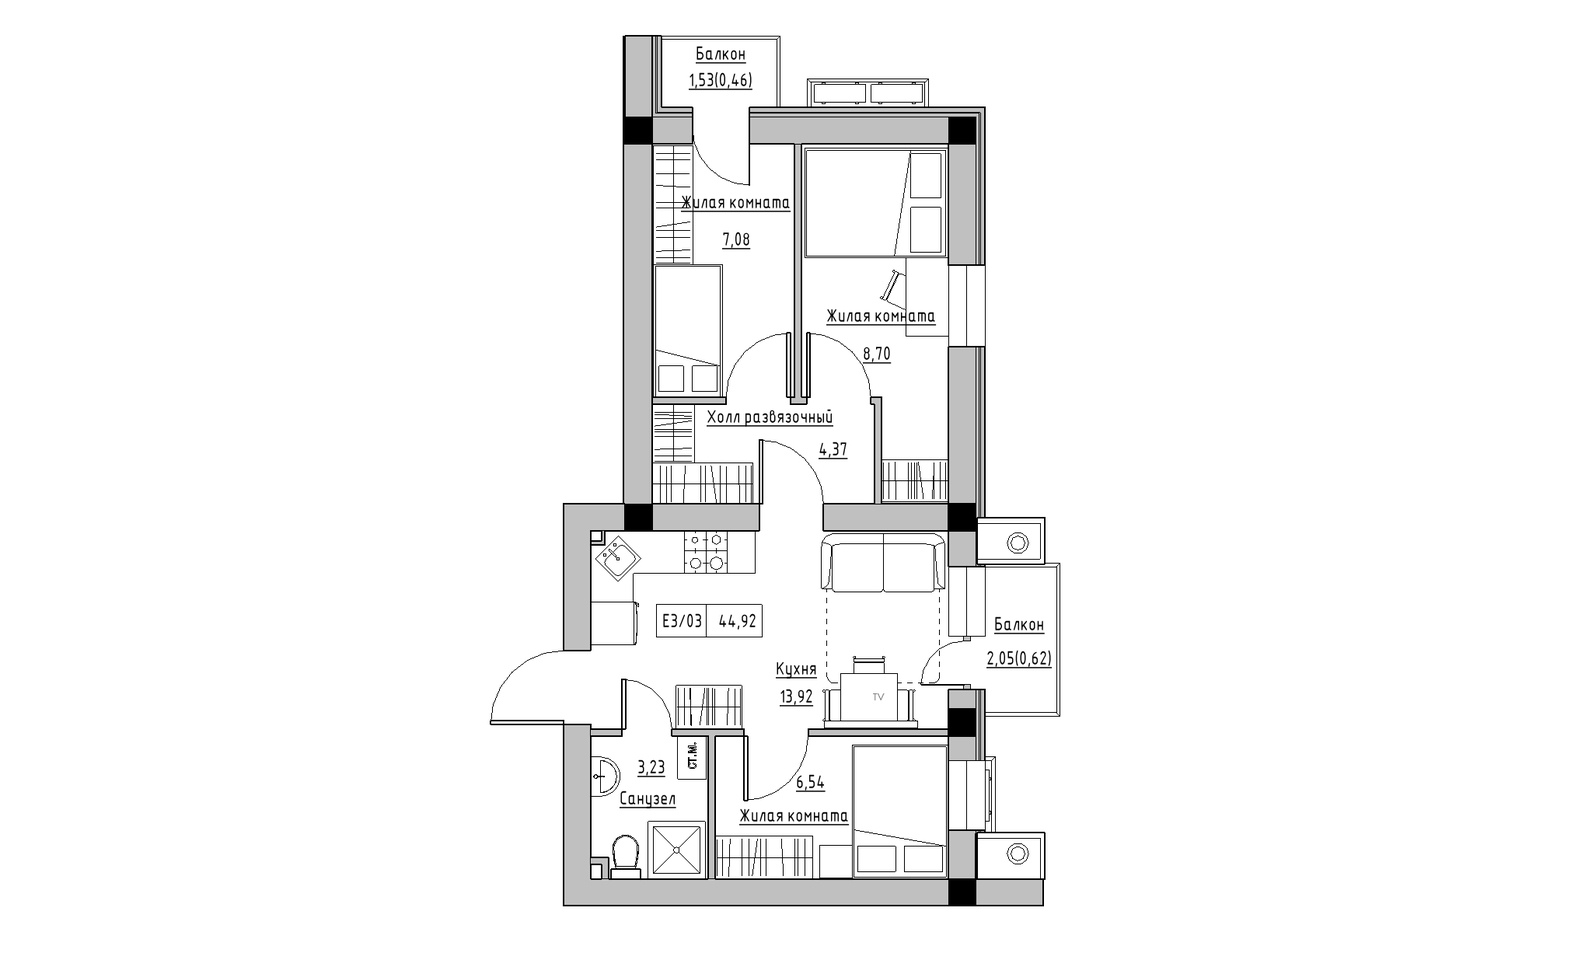 Планування 3-к квартира площею 44.92м2, KS-014-05/0011.